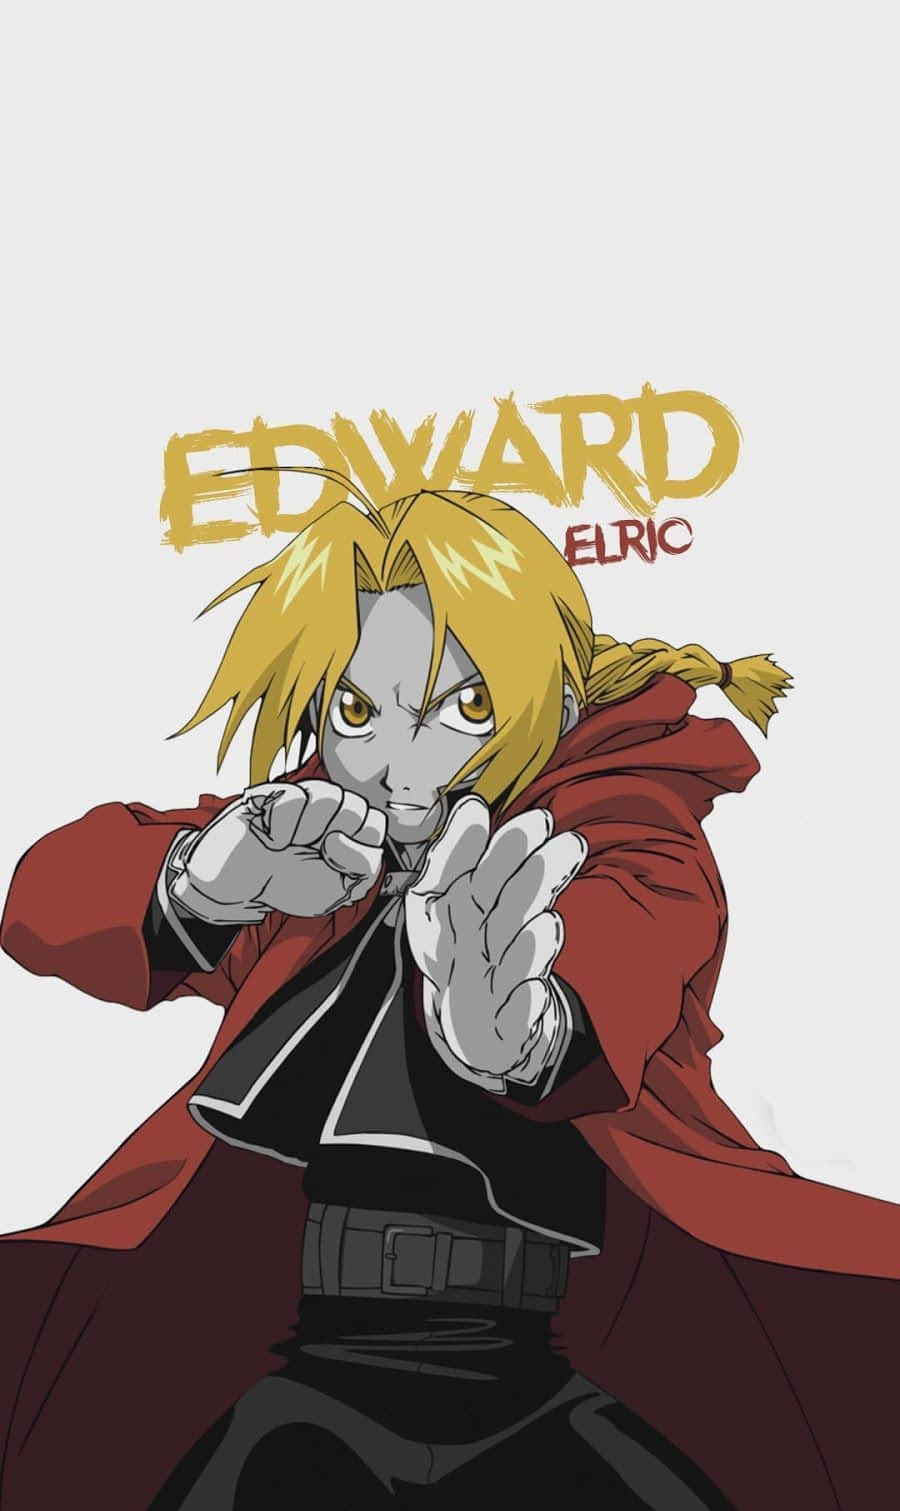 Edward Elric - The Fullmetal Alchemist